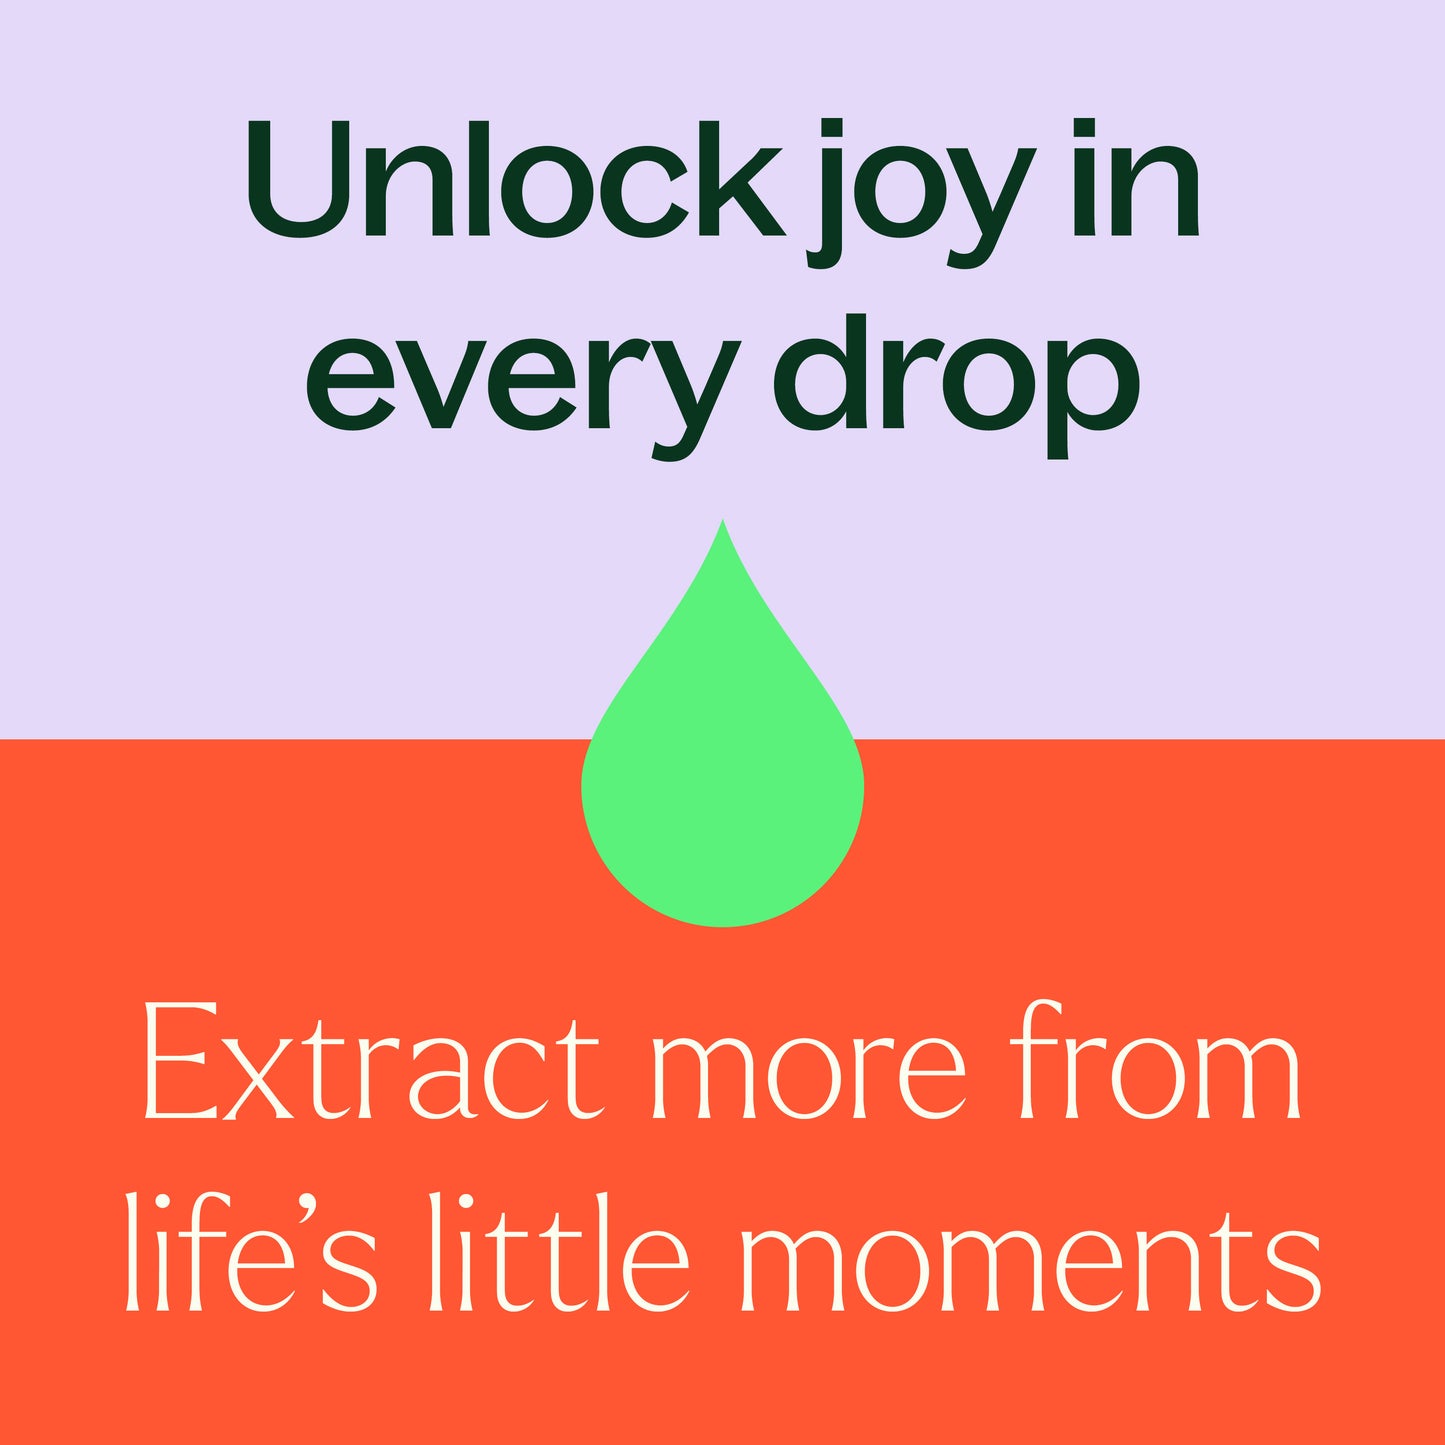 Unlock joy in every drop